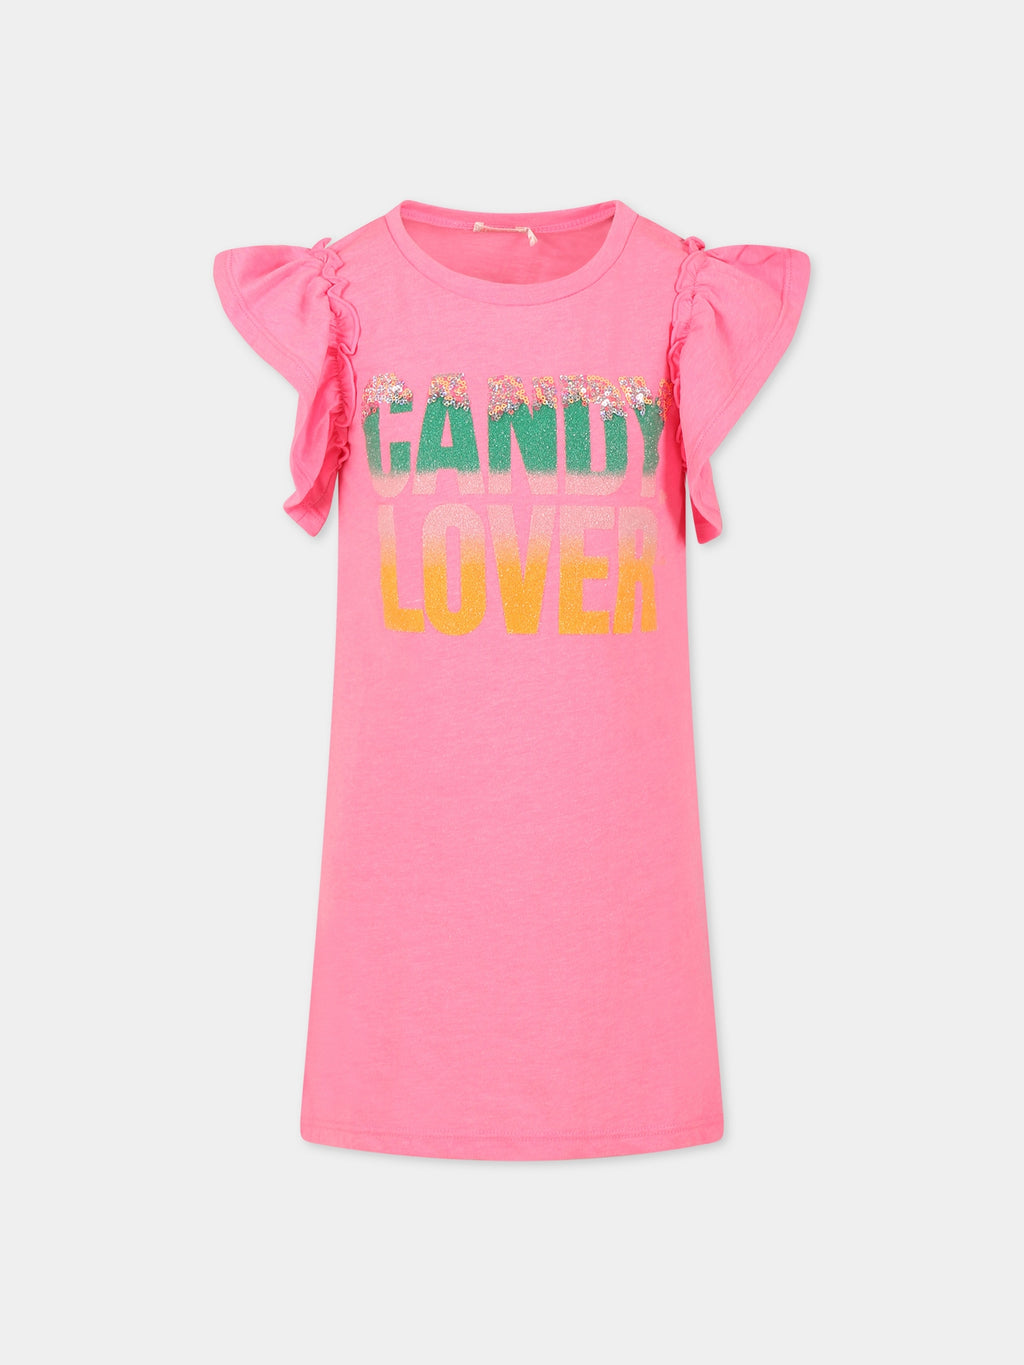 Vestito rosa per bambina con scritta Candy Lover